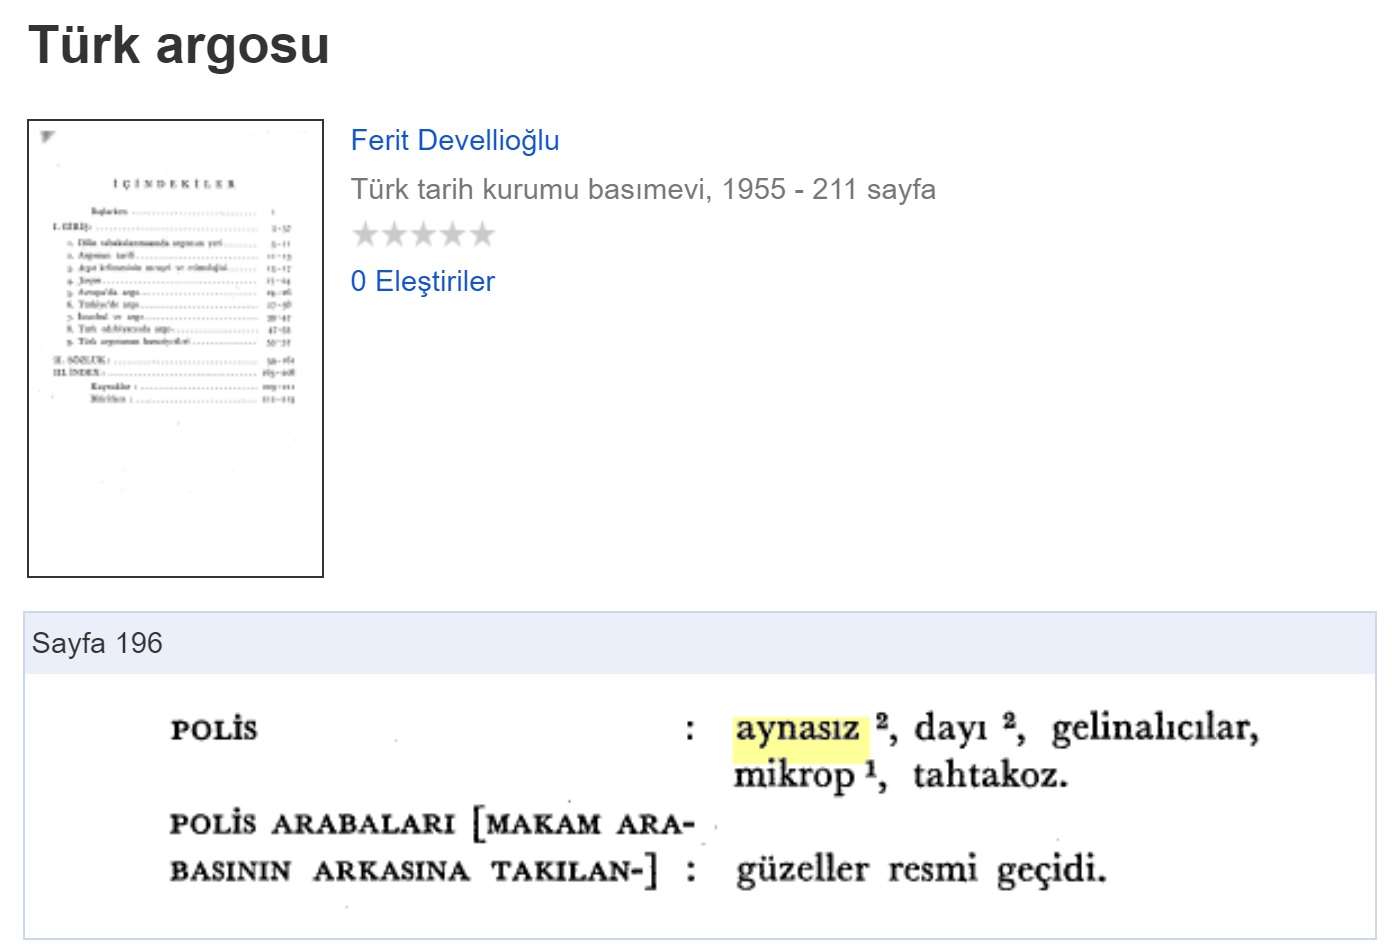 Ferit Devellioğlu'nun 1955 basımı Türk Argosu sözlüğünde polis için kullanılan aynasız açıklaması